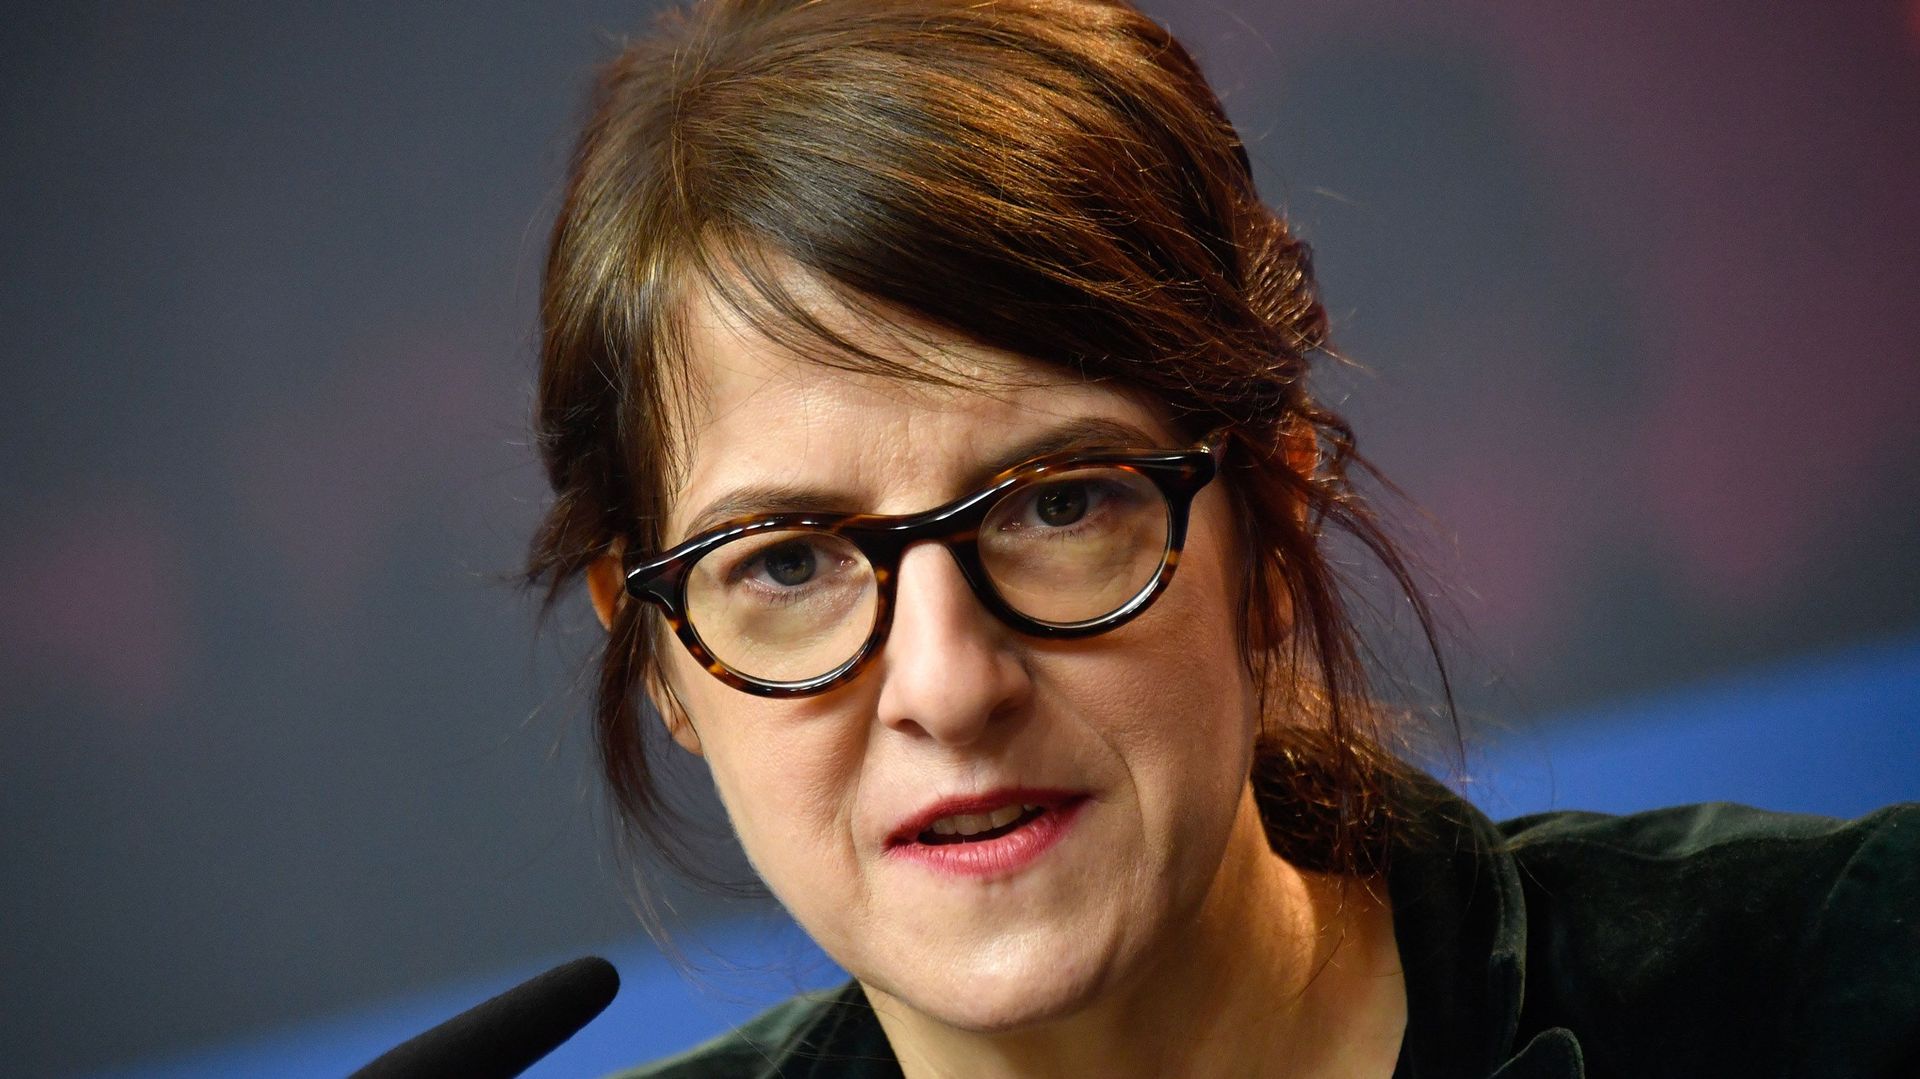 La réalisatrice suisse Ursula Meier présidera le jury de la Caméra d'or du 71e Festival de Cannes